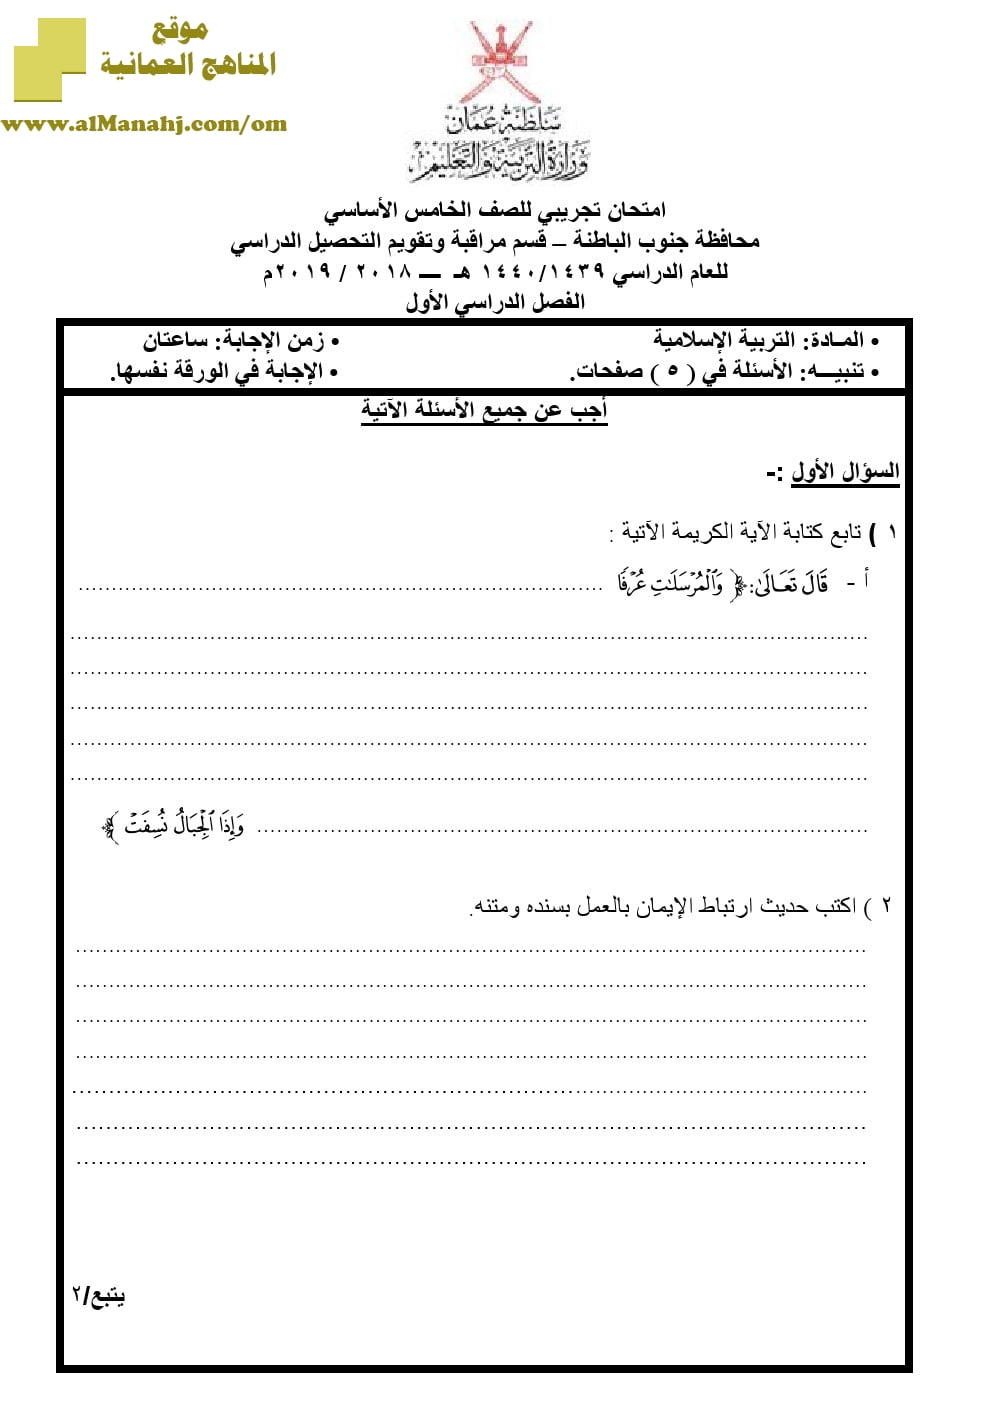 أسئلة وإجابة الامتحان التجريبي في محافظة جنوب الباطنة (تربية اسلامية) الخامس